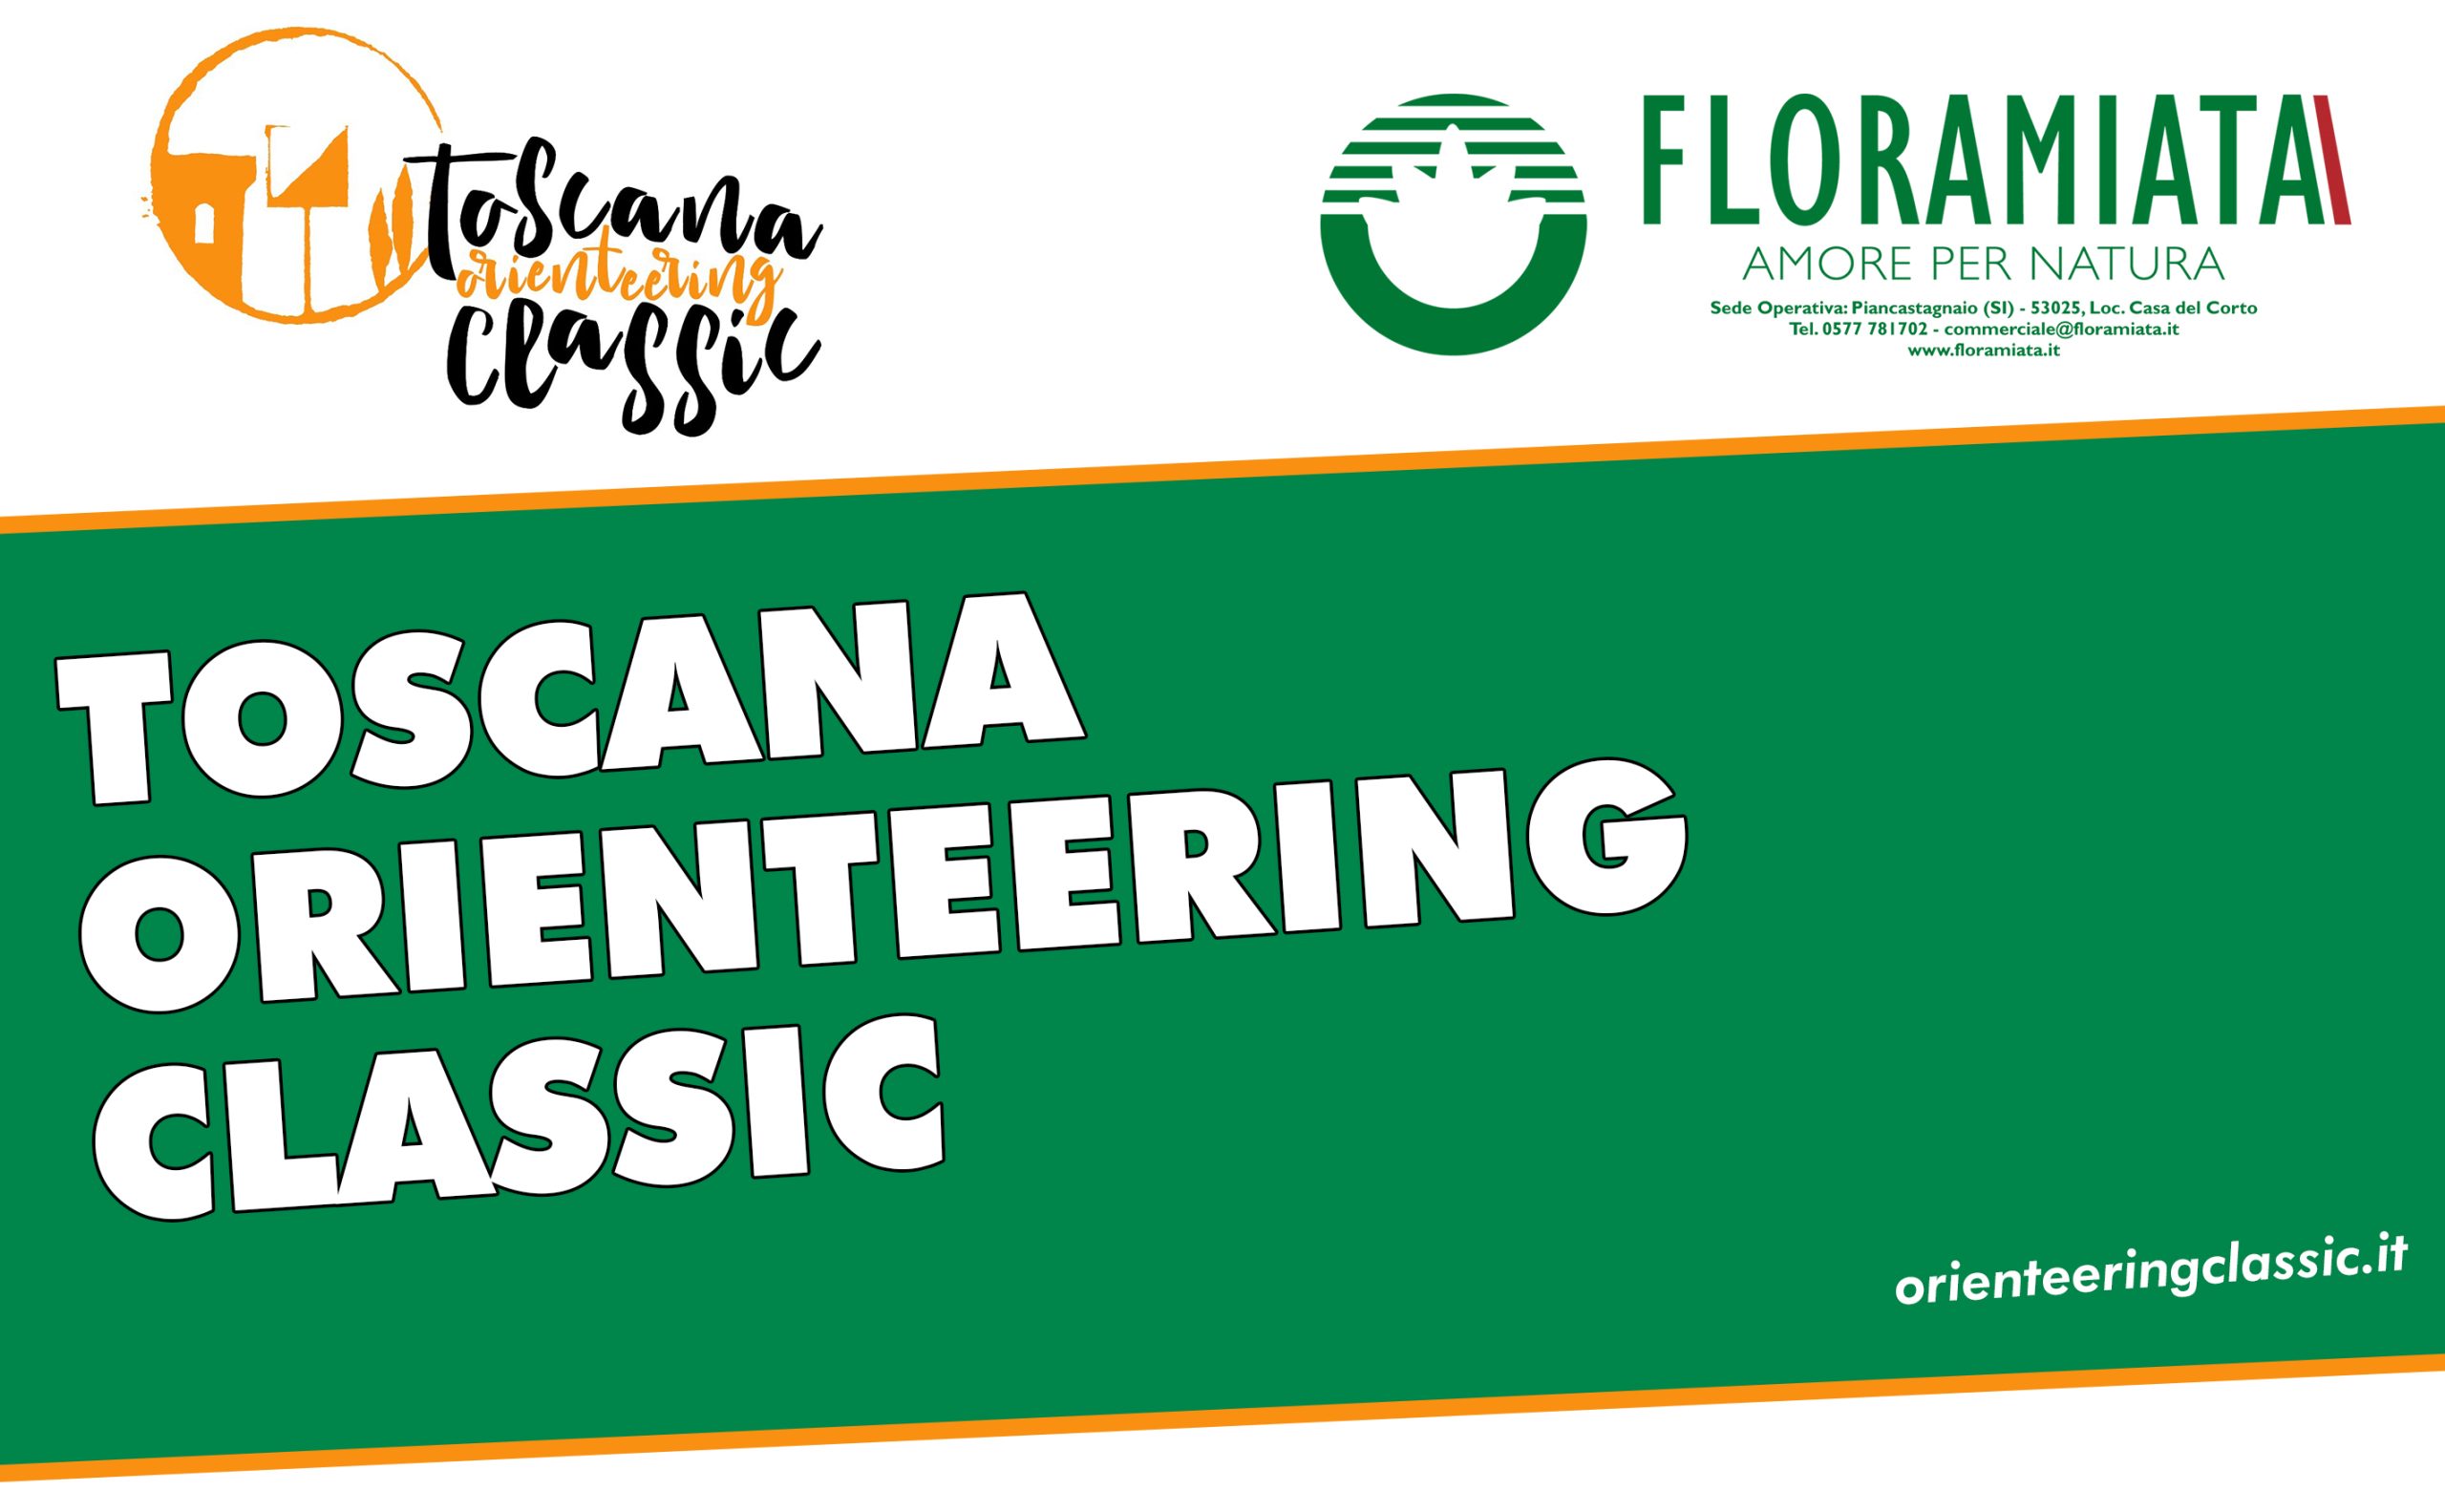 Le piante di Floramiata premiano gli atleti del Toscana Orienteering Classic